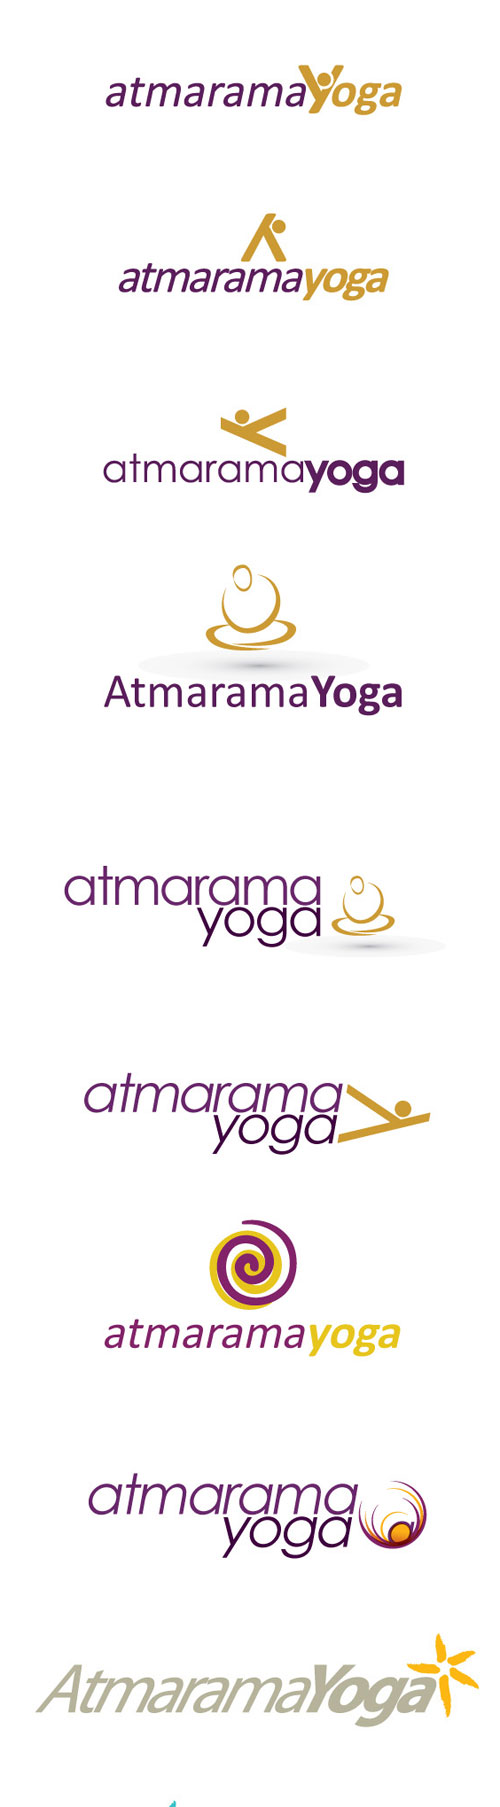 Logokonzept Yoga